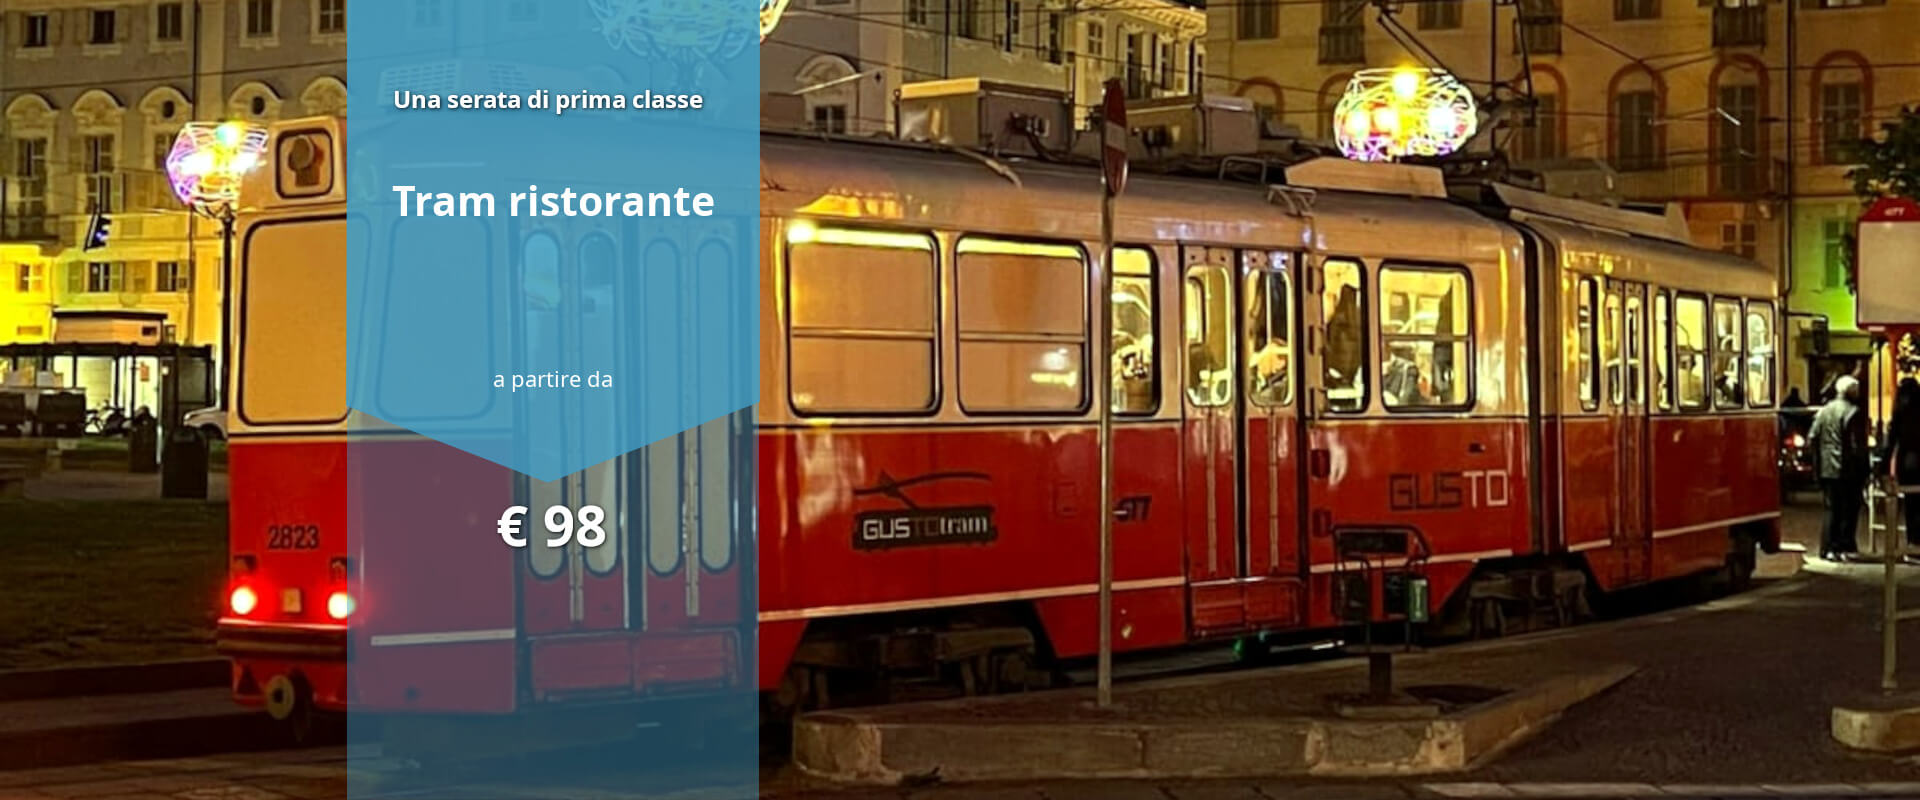 regalare esperienza tram ristorante a Torino